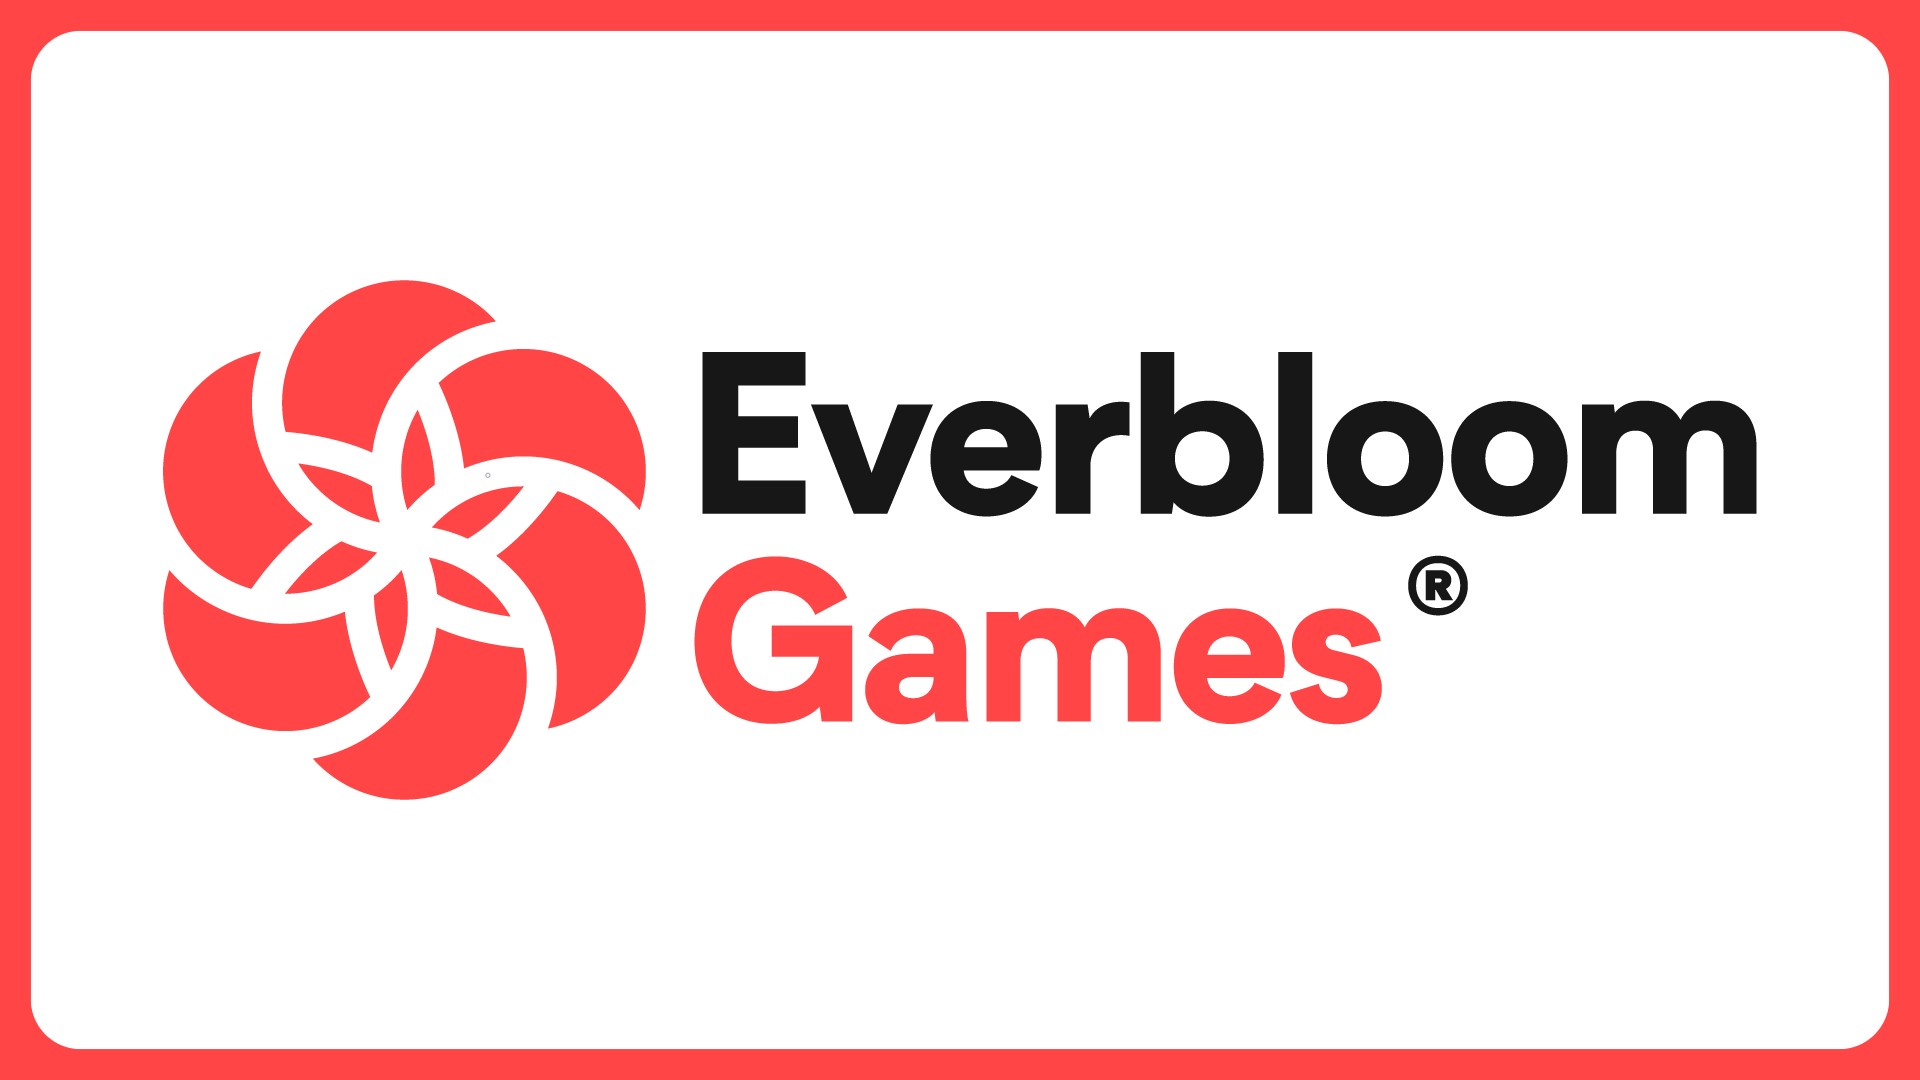 Everbloom Games Key Art